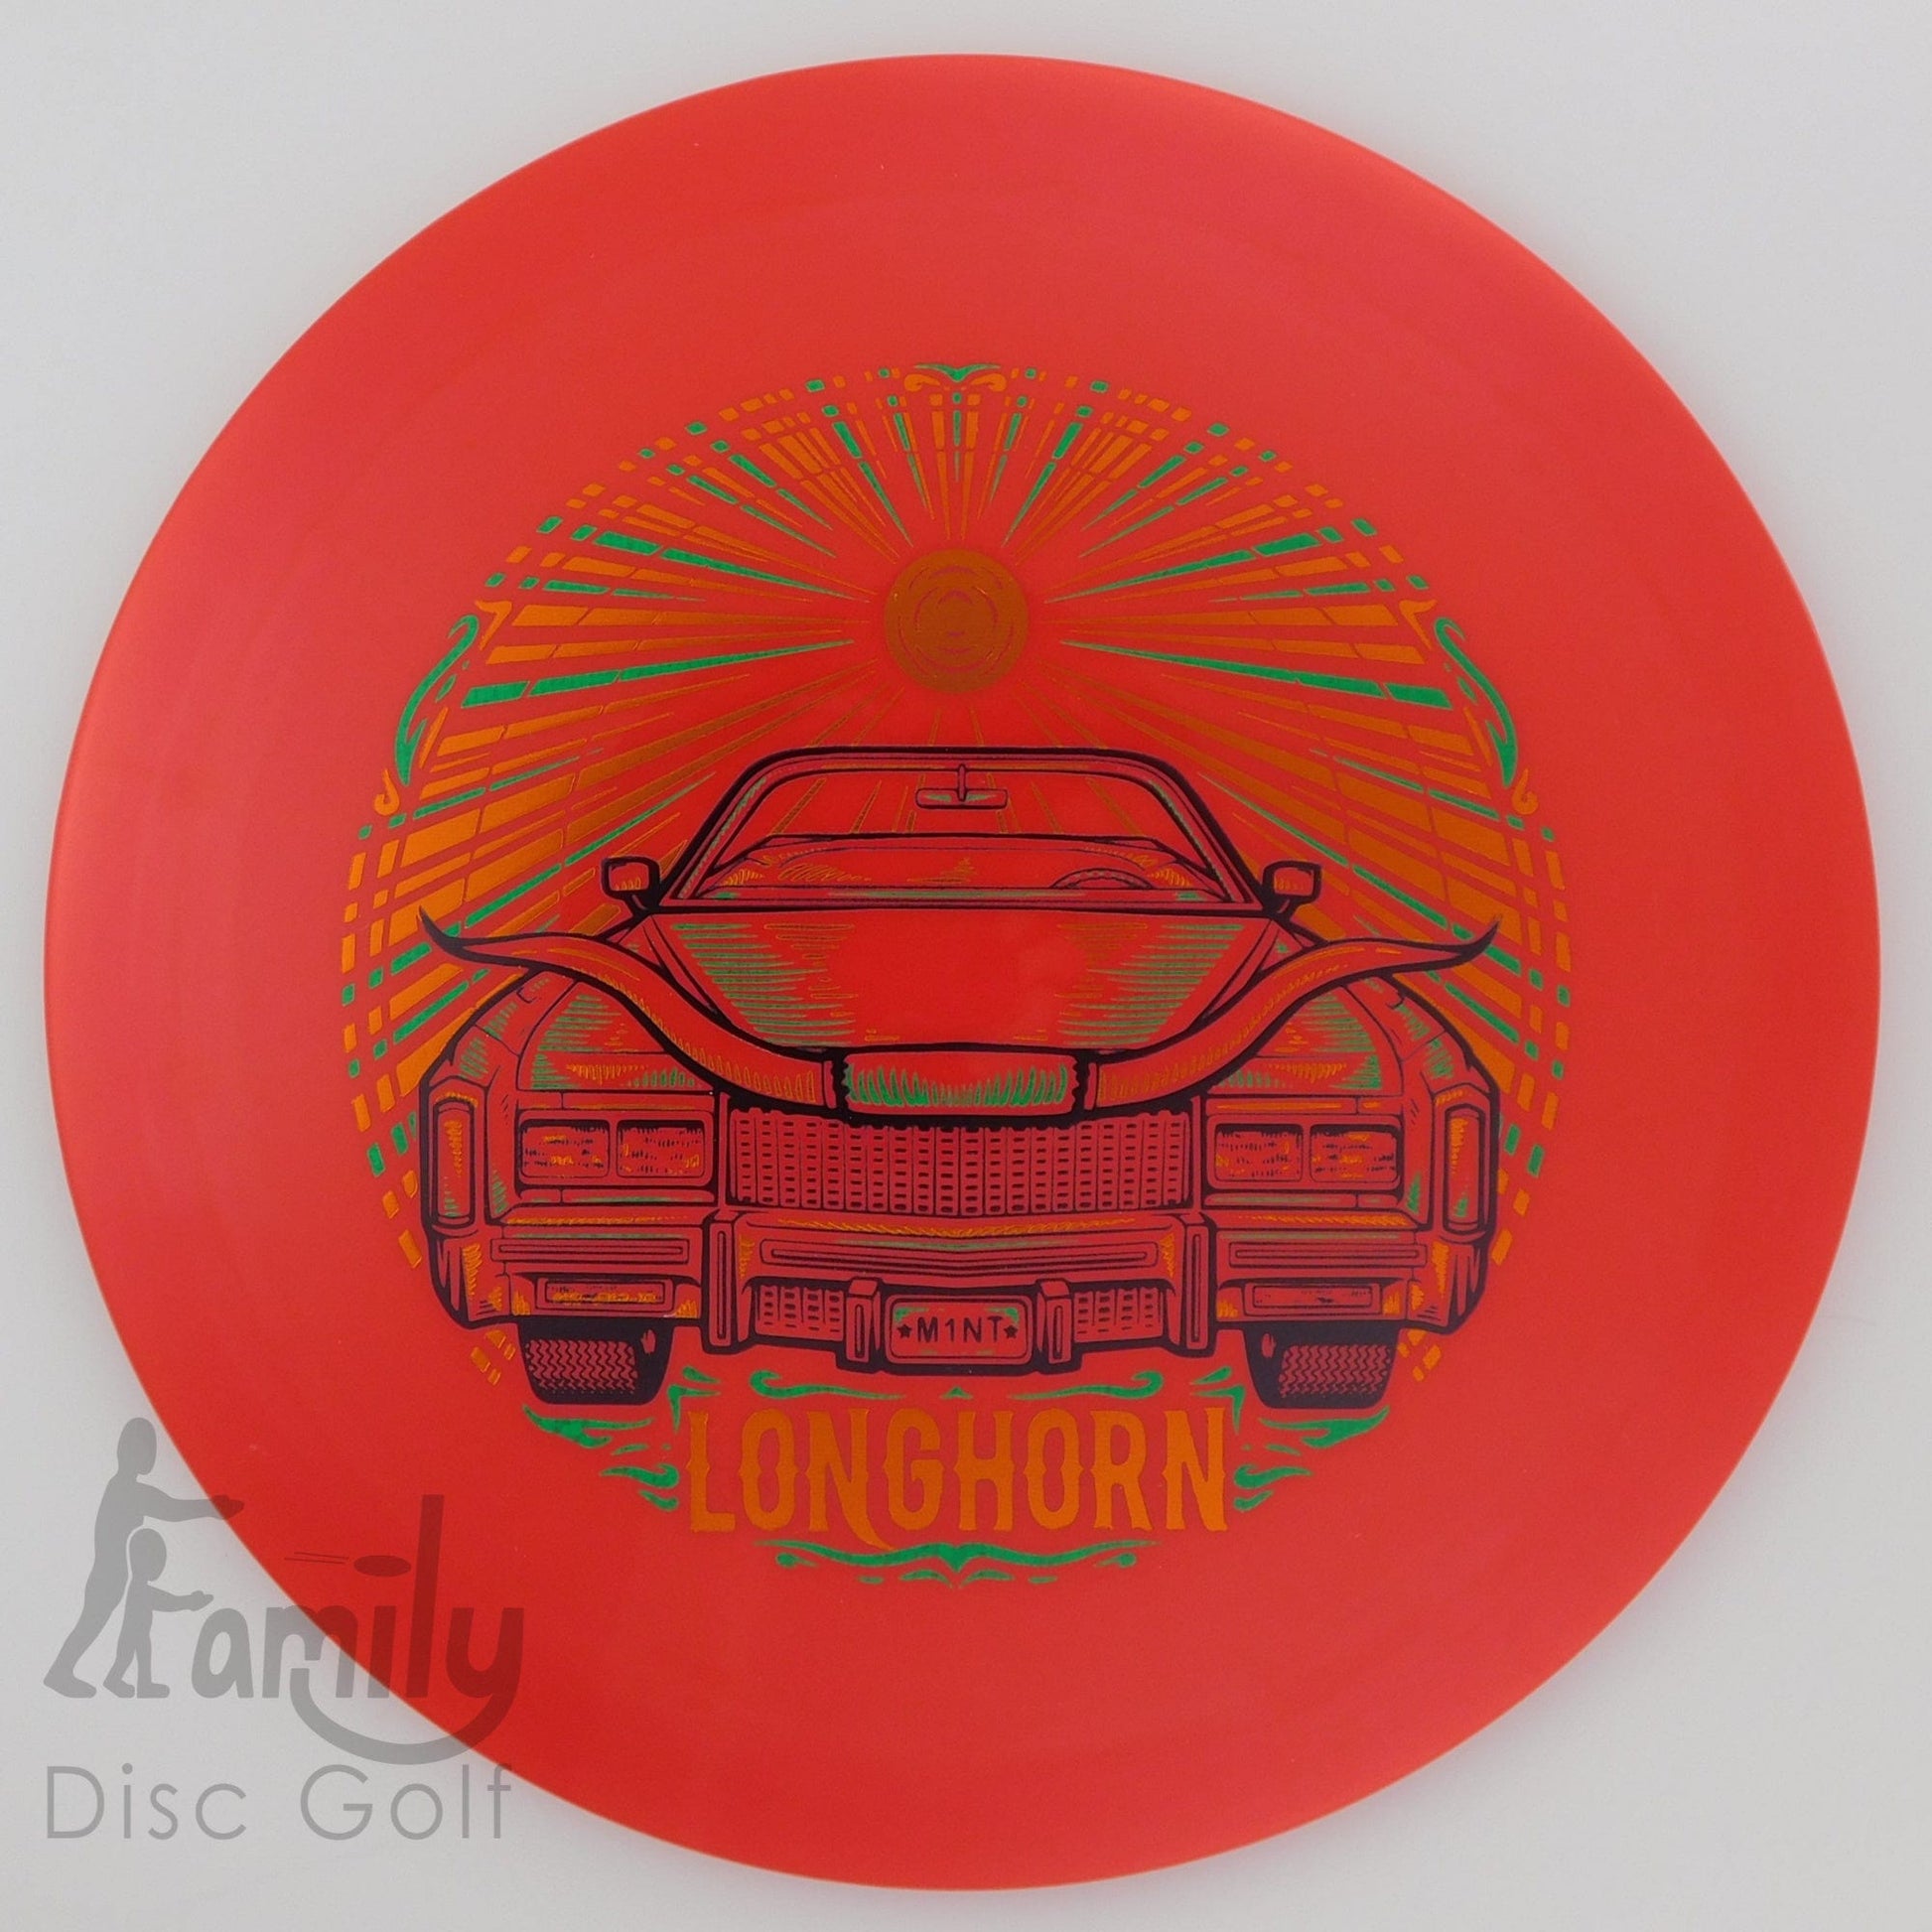 Mint Discs Longhorn - Sublime 11│4│-1│2.5 169.1g - Red - Mint Discs Longhorn - Sublime - 101356